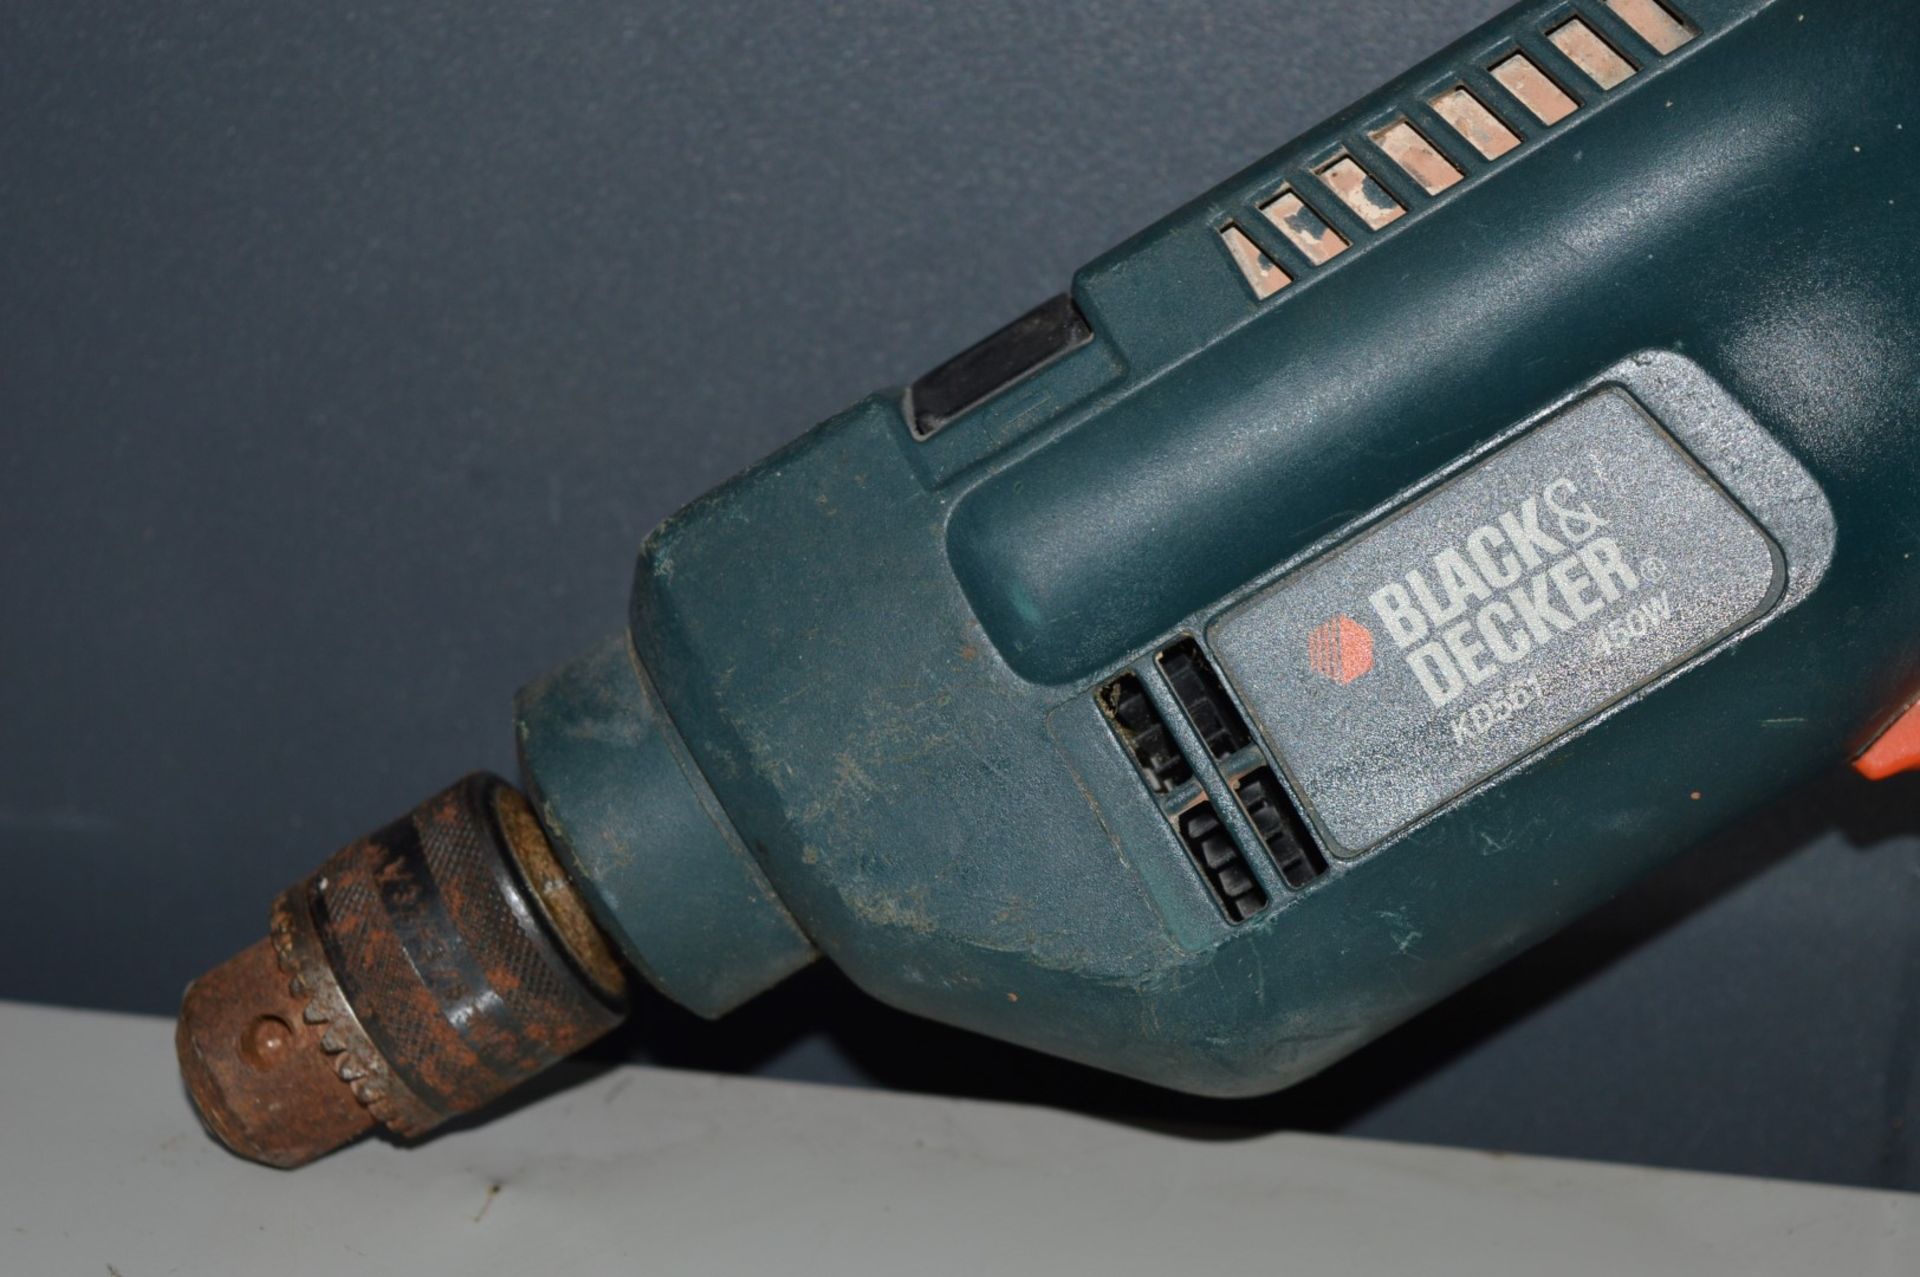 1 x Black & Decker Hammer Drill - Model KD561 - 240v - Ref: KH028 / SHD - CL168 - Location: - Image 2 of 3